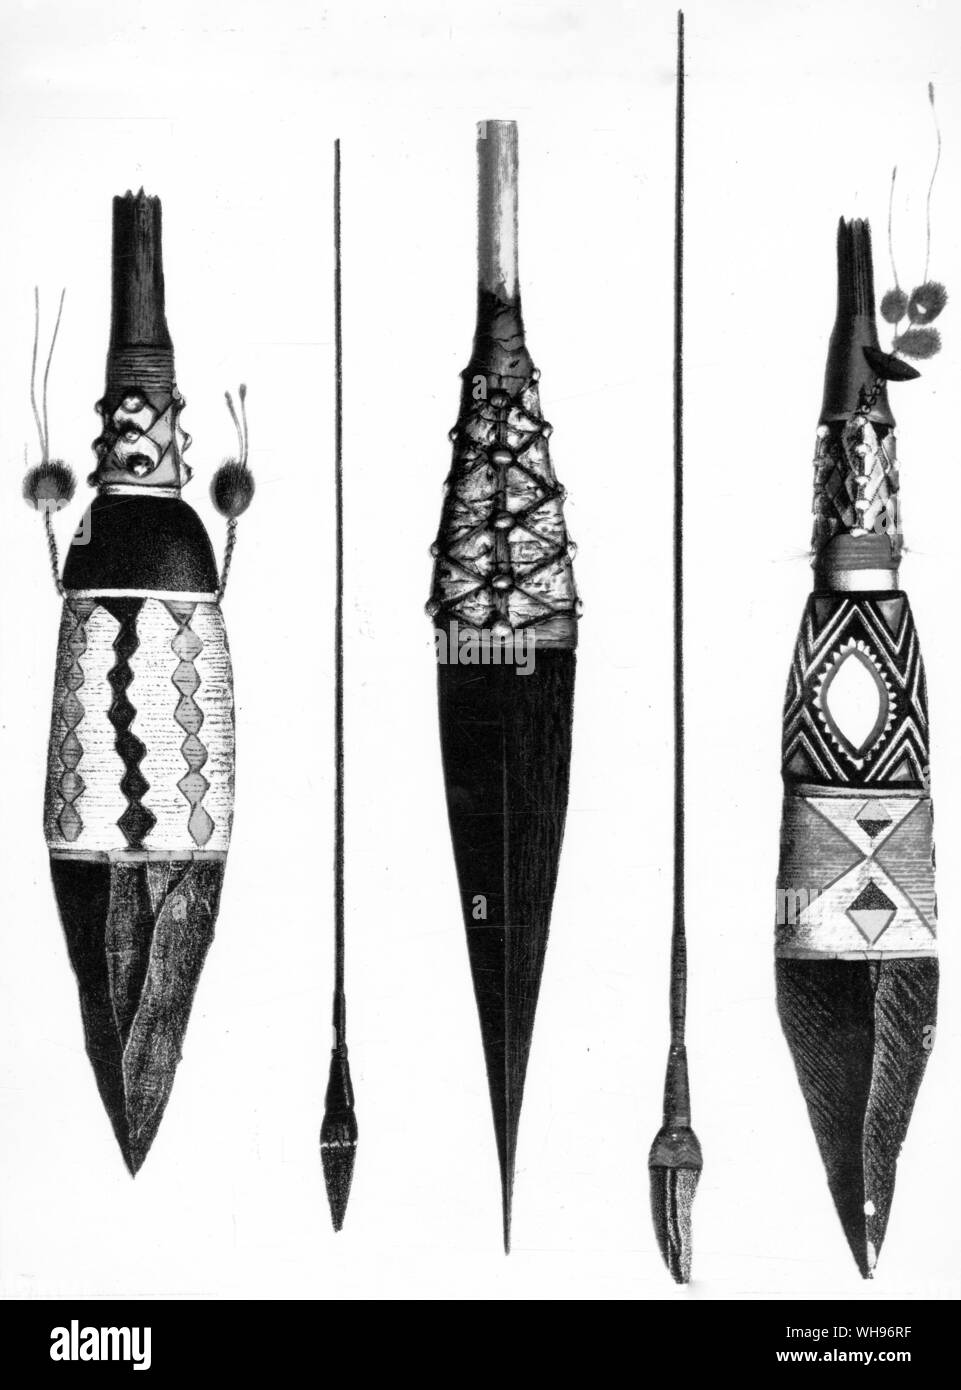 Guinée : les îles de l'amirauté. Des lances. Le central ci-dessous a son extrémité, en bois dur, peint pour ressembler à la tête d'obsidienne à gauche et droite. Banque D'Images